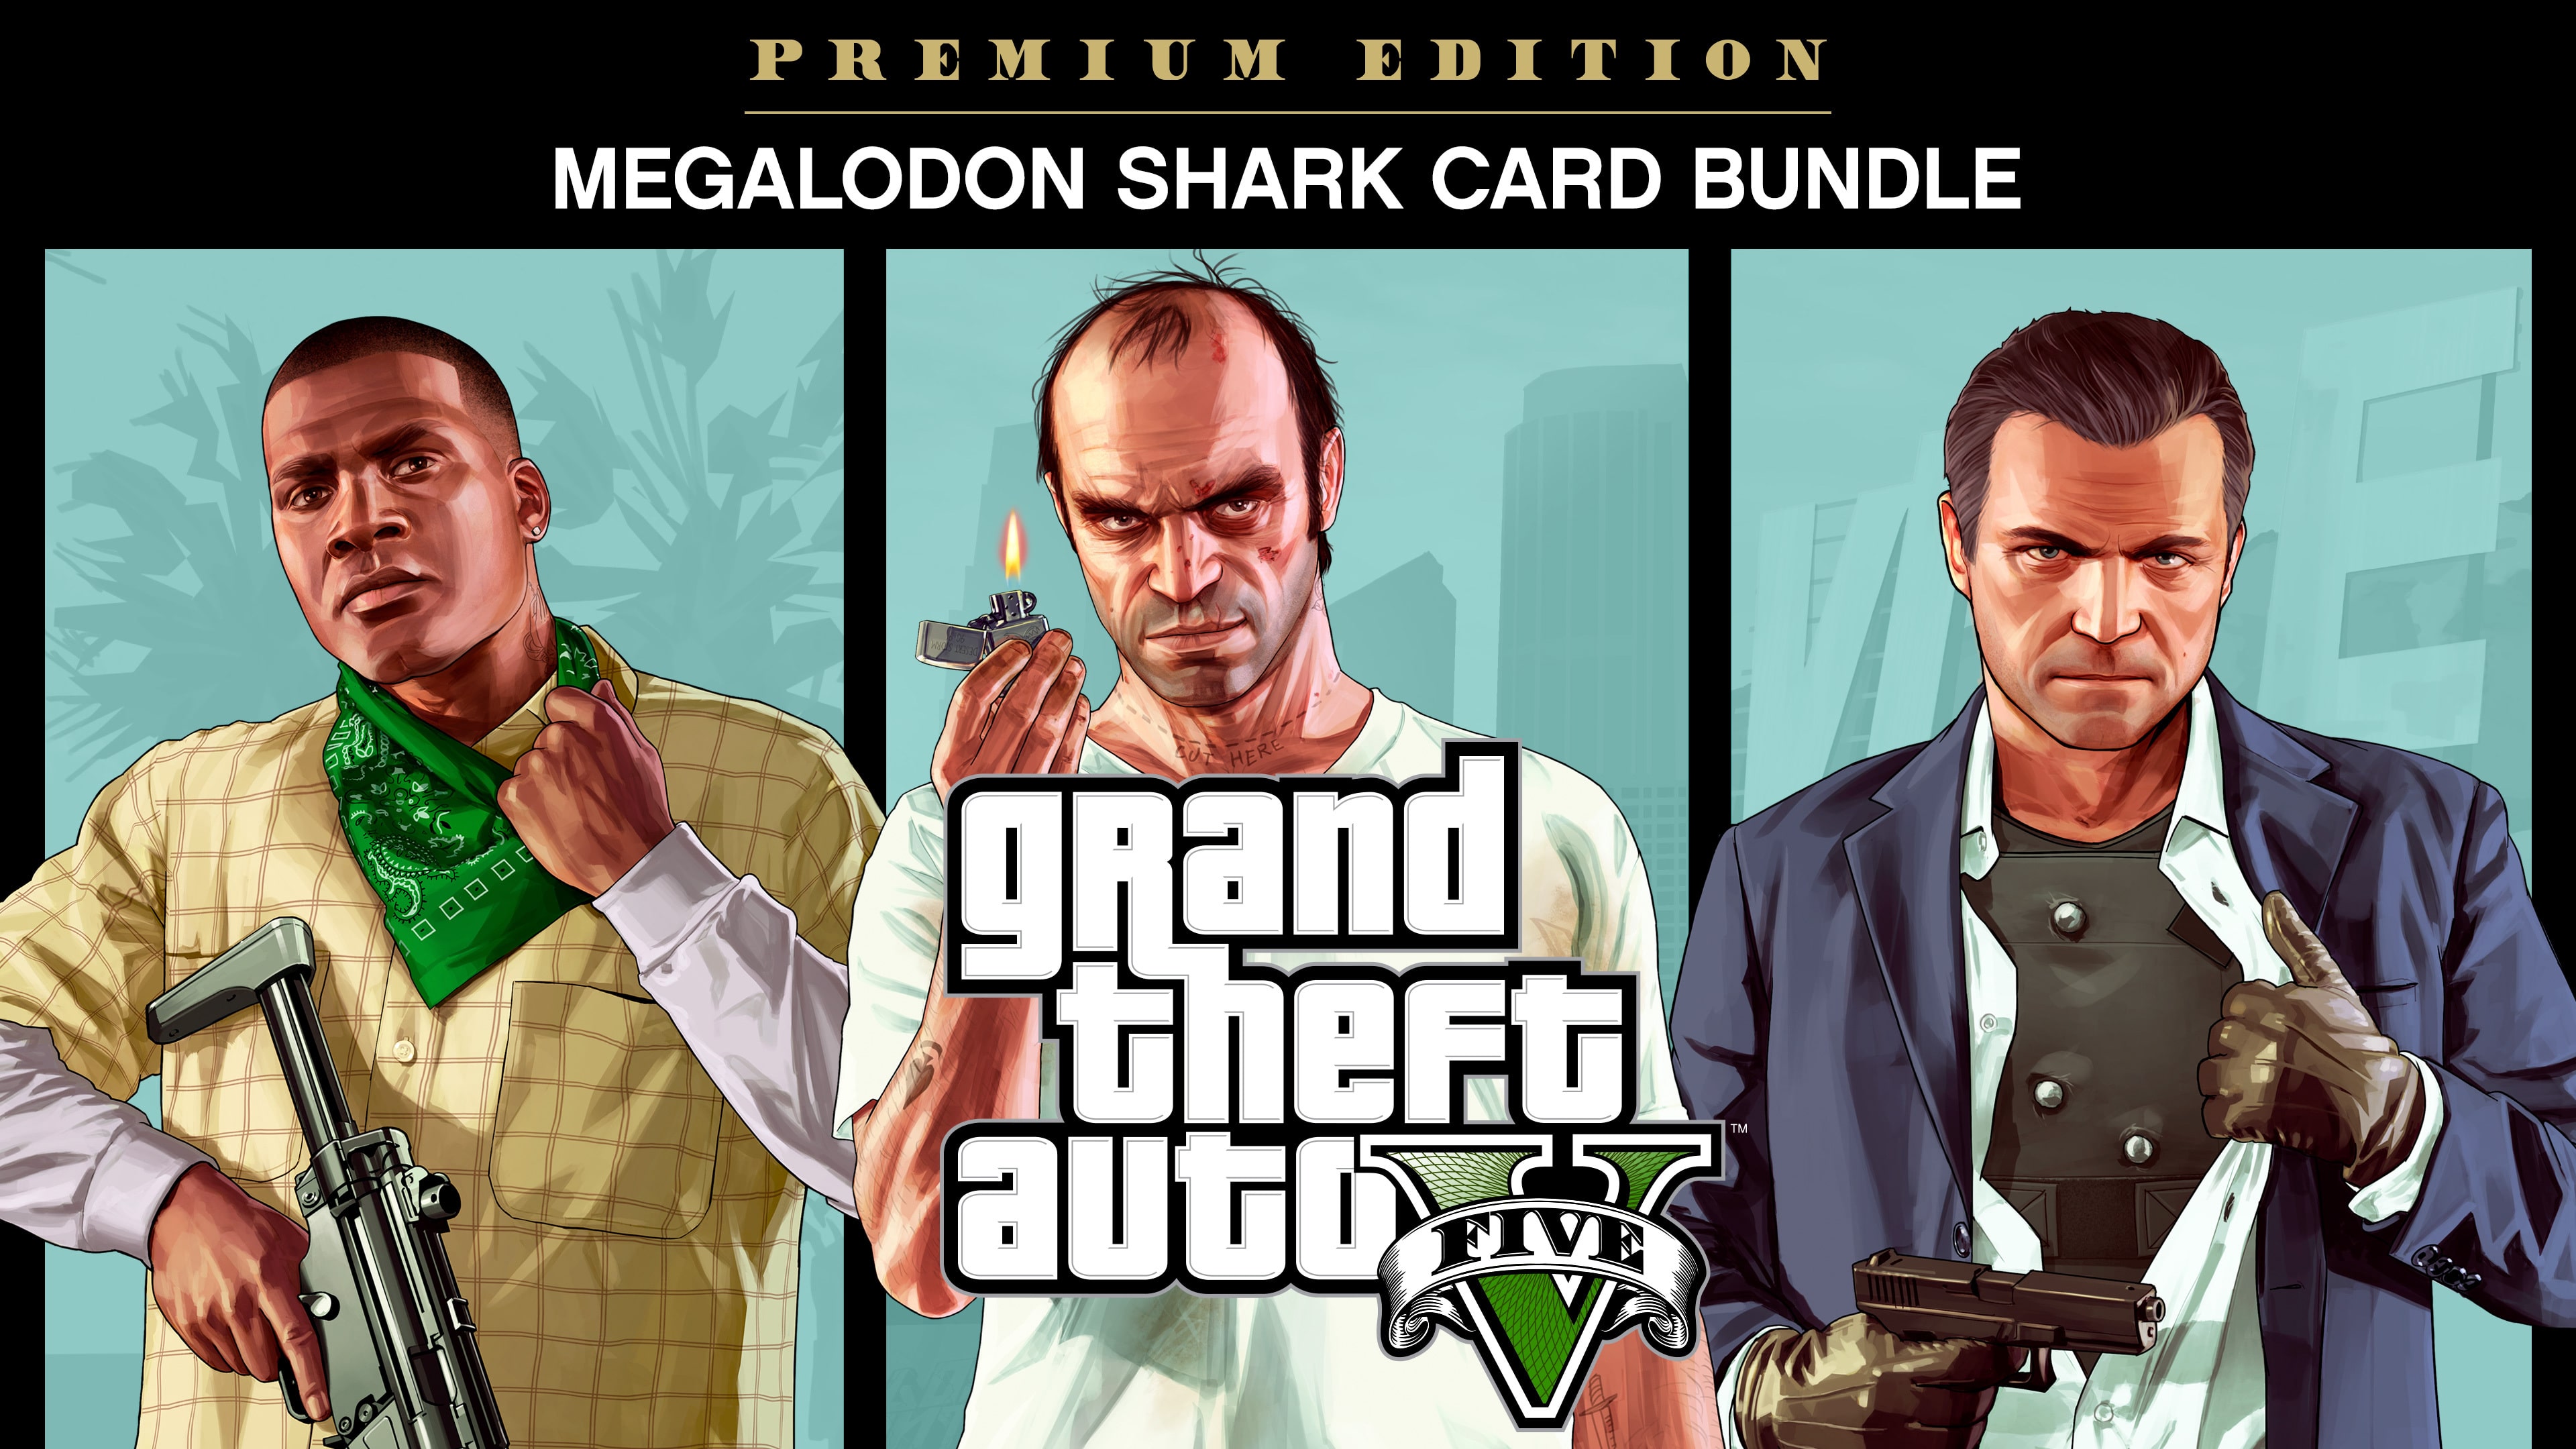 Grand Theft Auto V: Edición Premium y tarjeta Tiburón megalodón